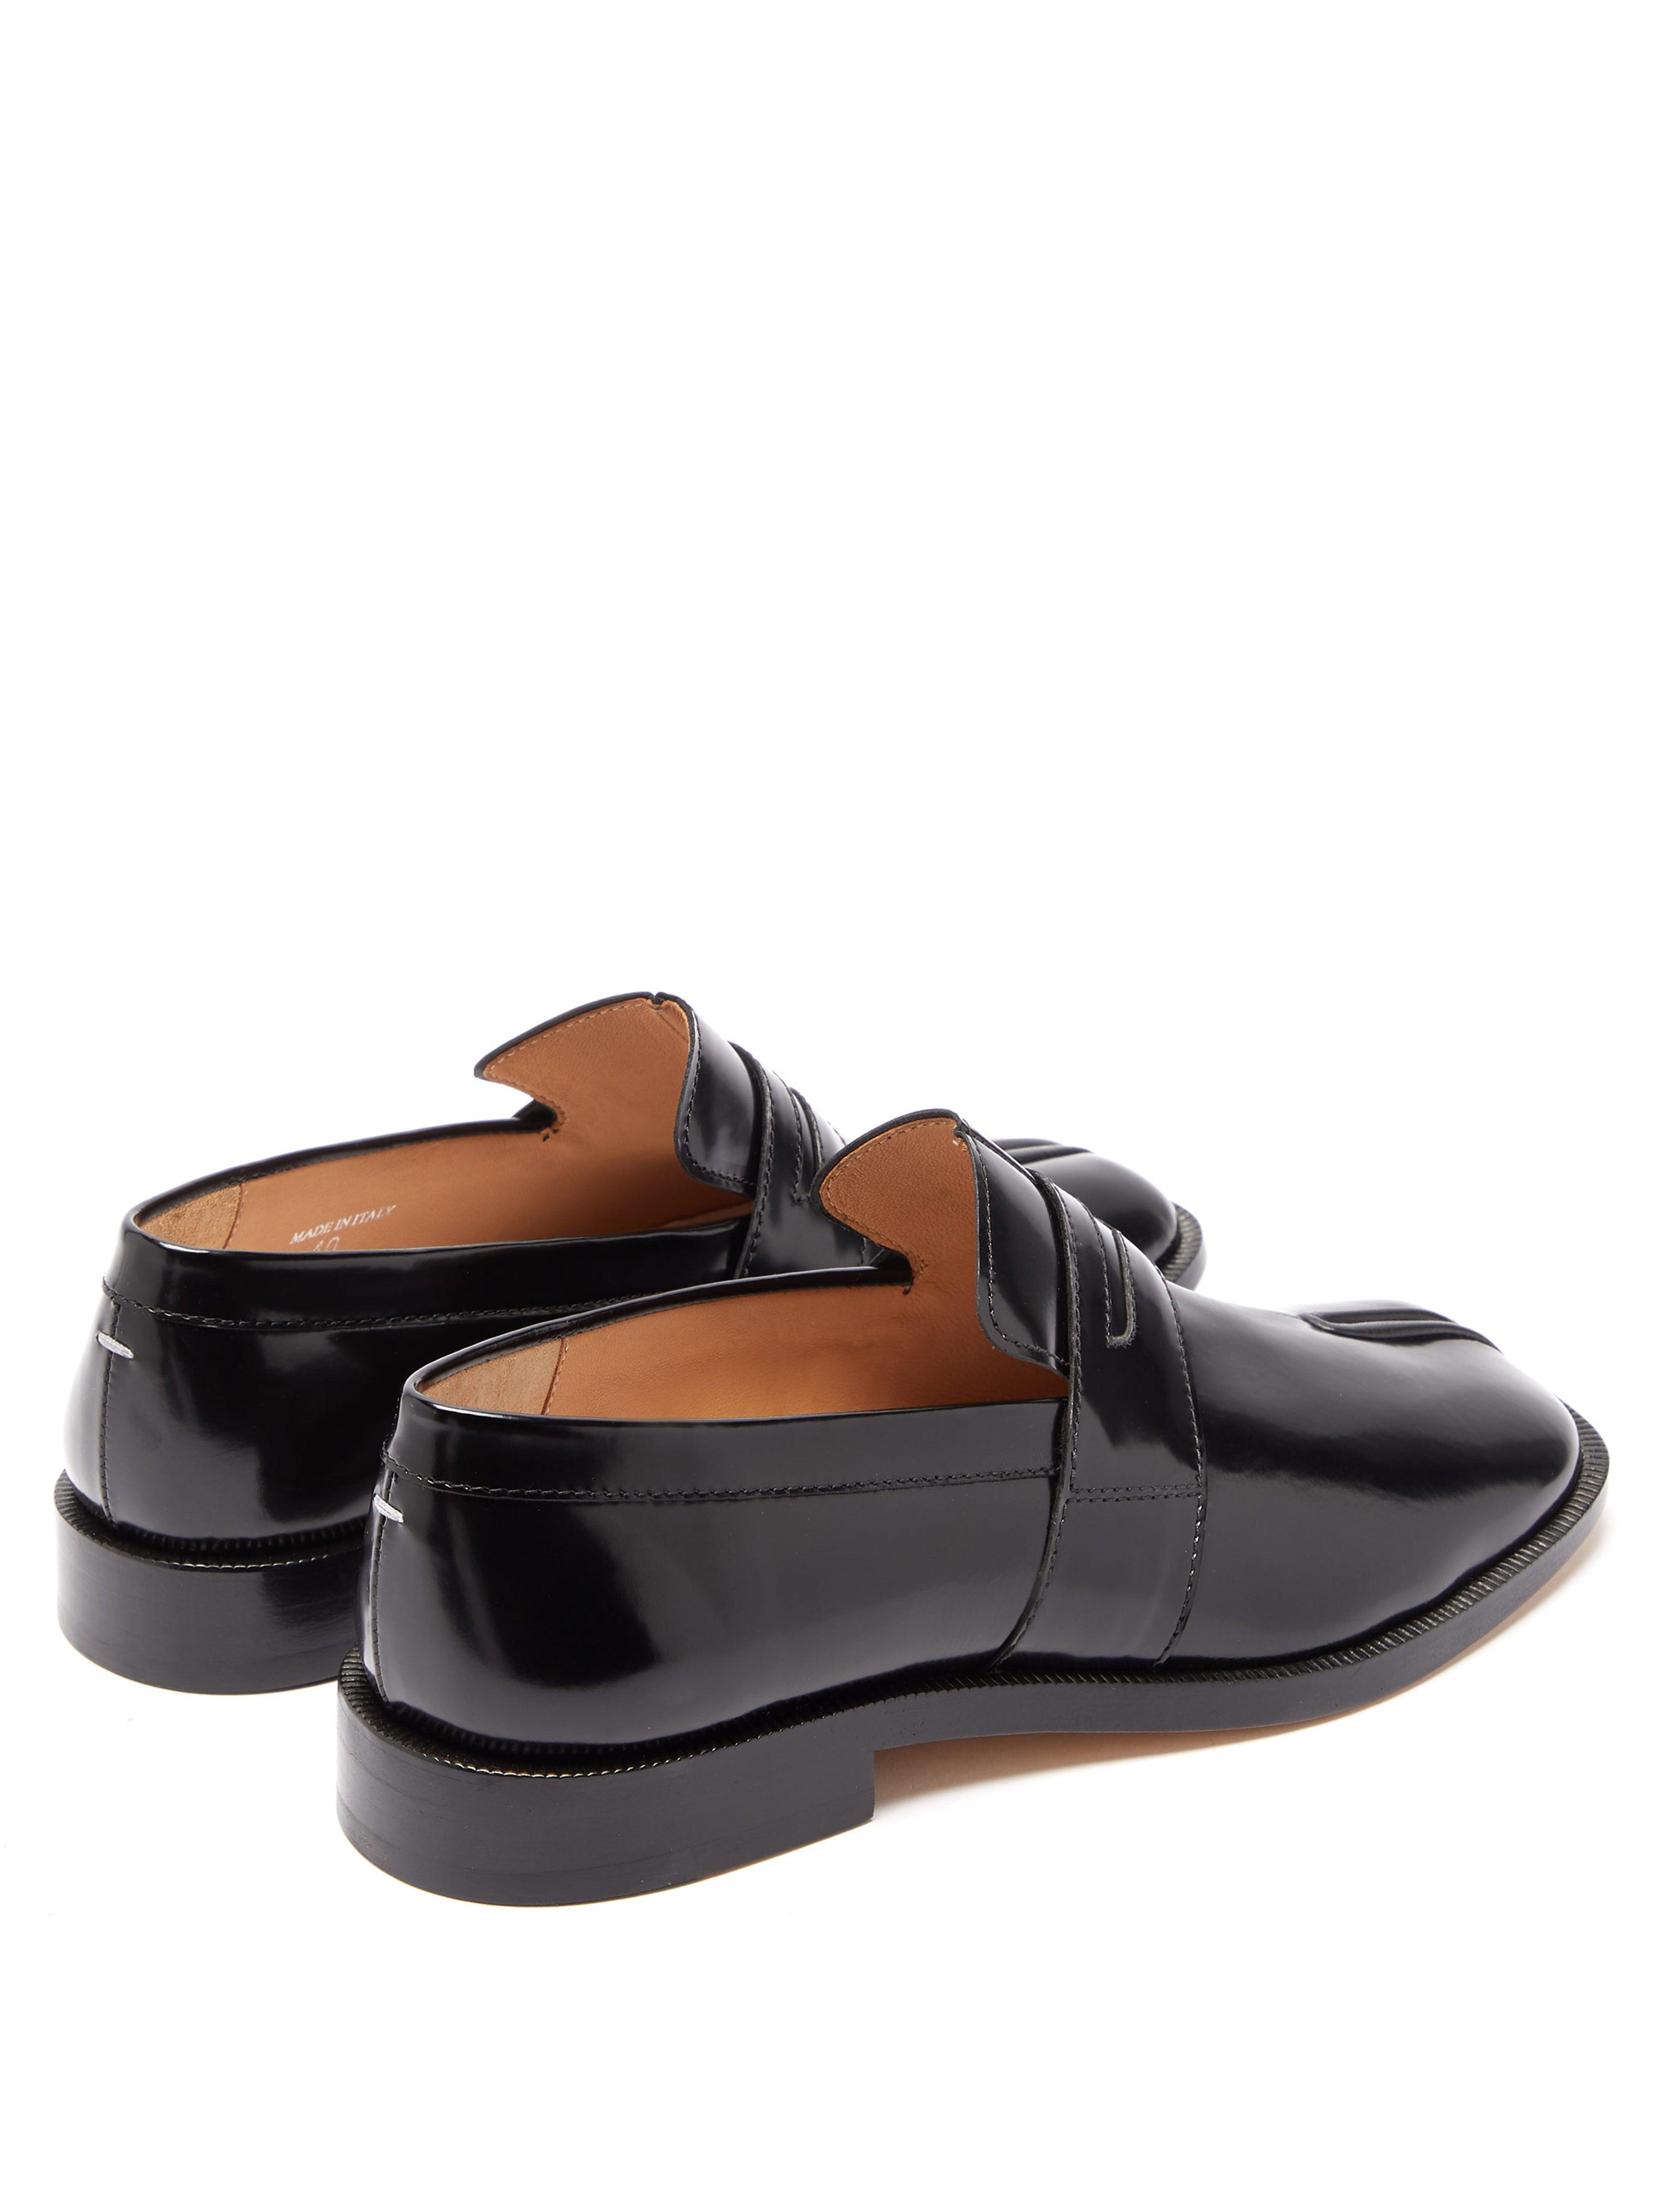 Maison Margiela Tabi Split-toe Leather Loafers in Black - Lyst